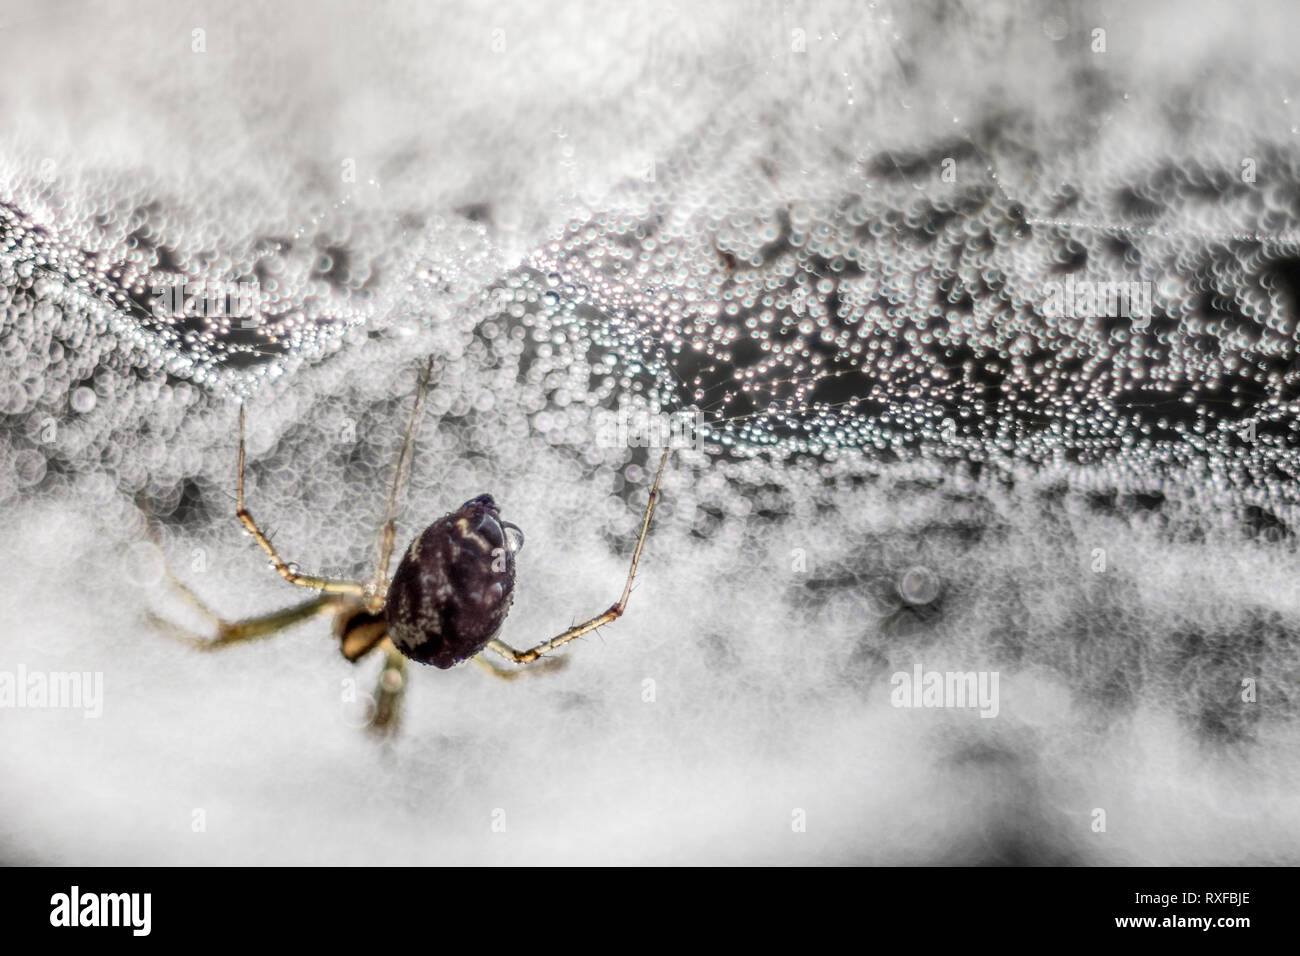 Spinnennetz mit Spinne im "Morgentau", fotografiert Mit einem alten CZJ Tessar Objektiv Foto Stock